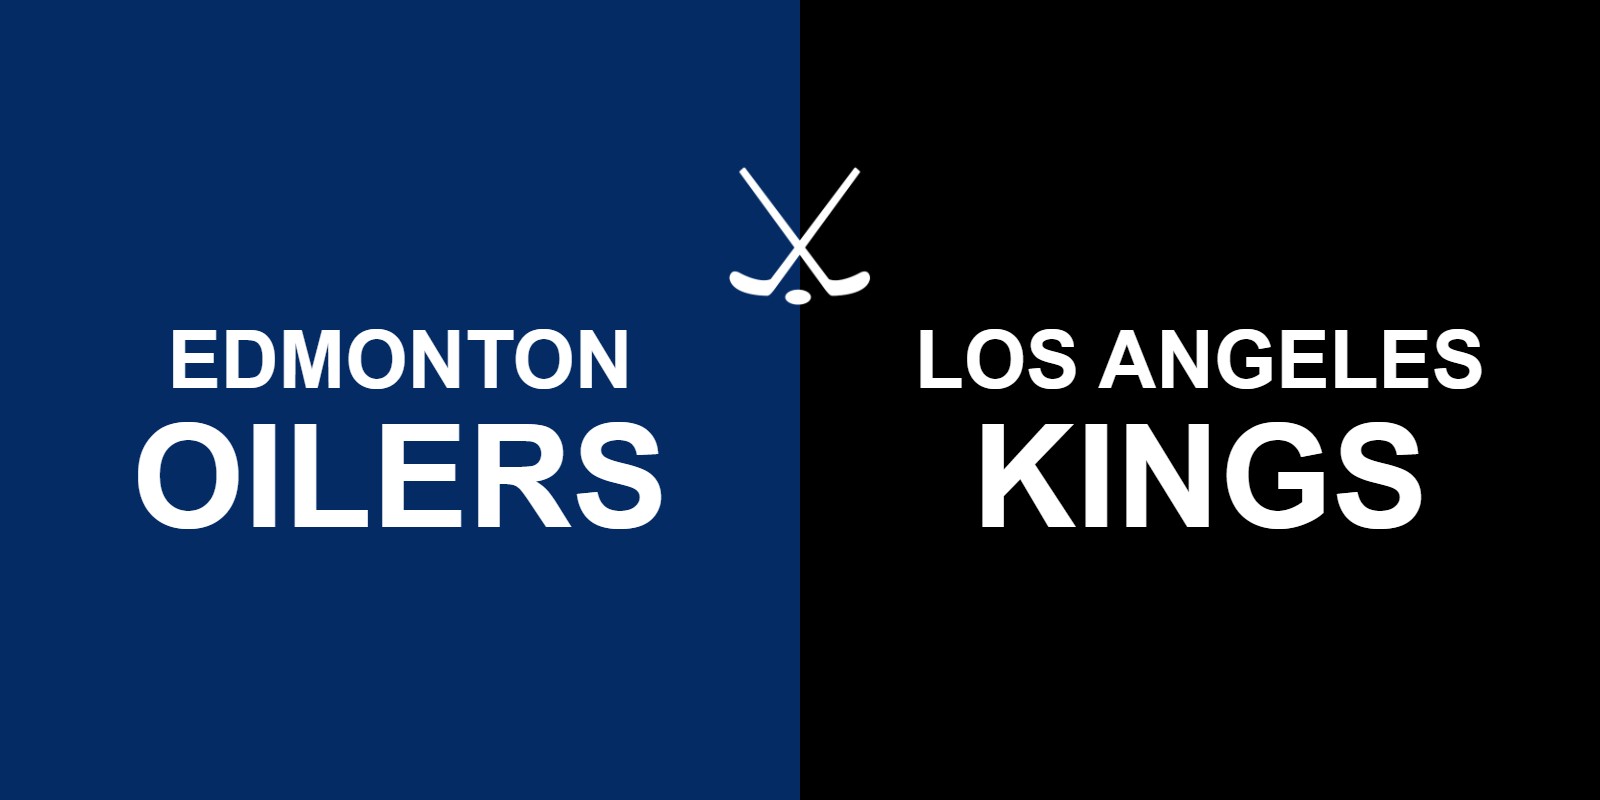 Oilers vs Kings